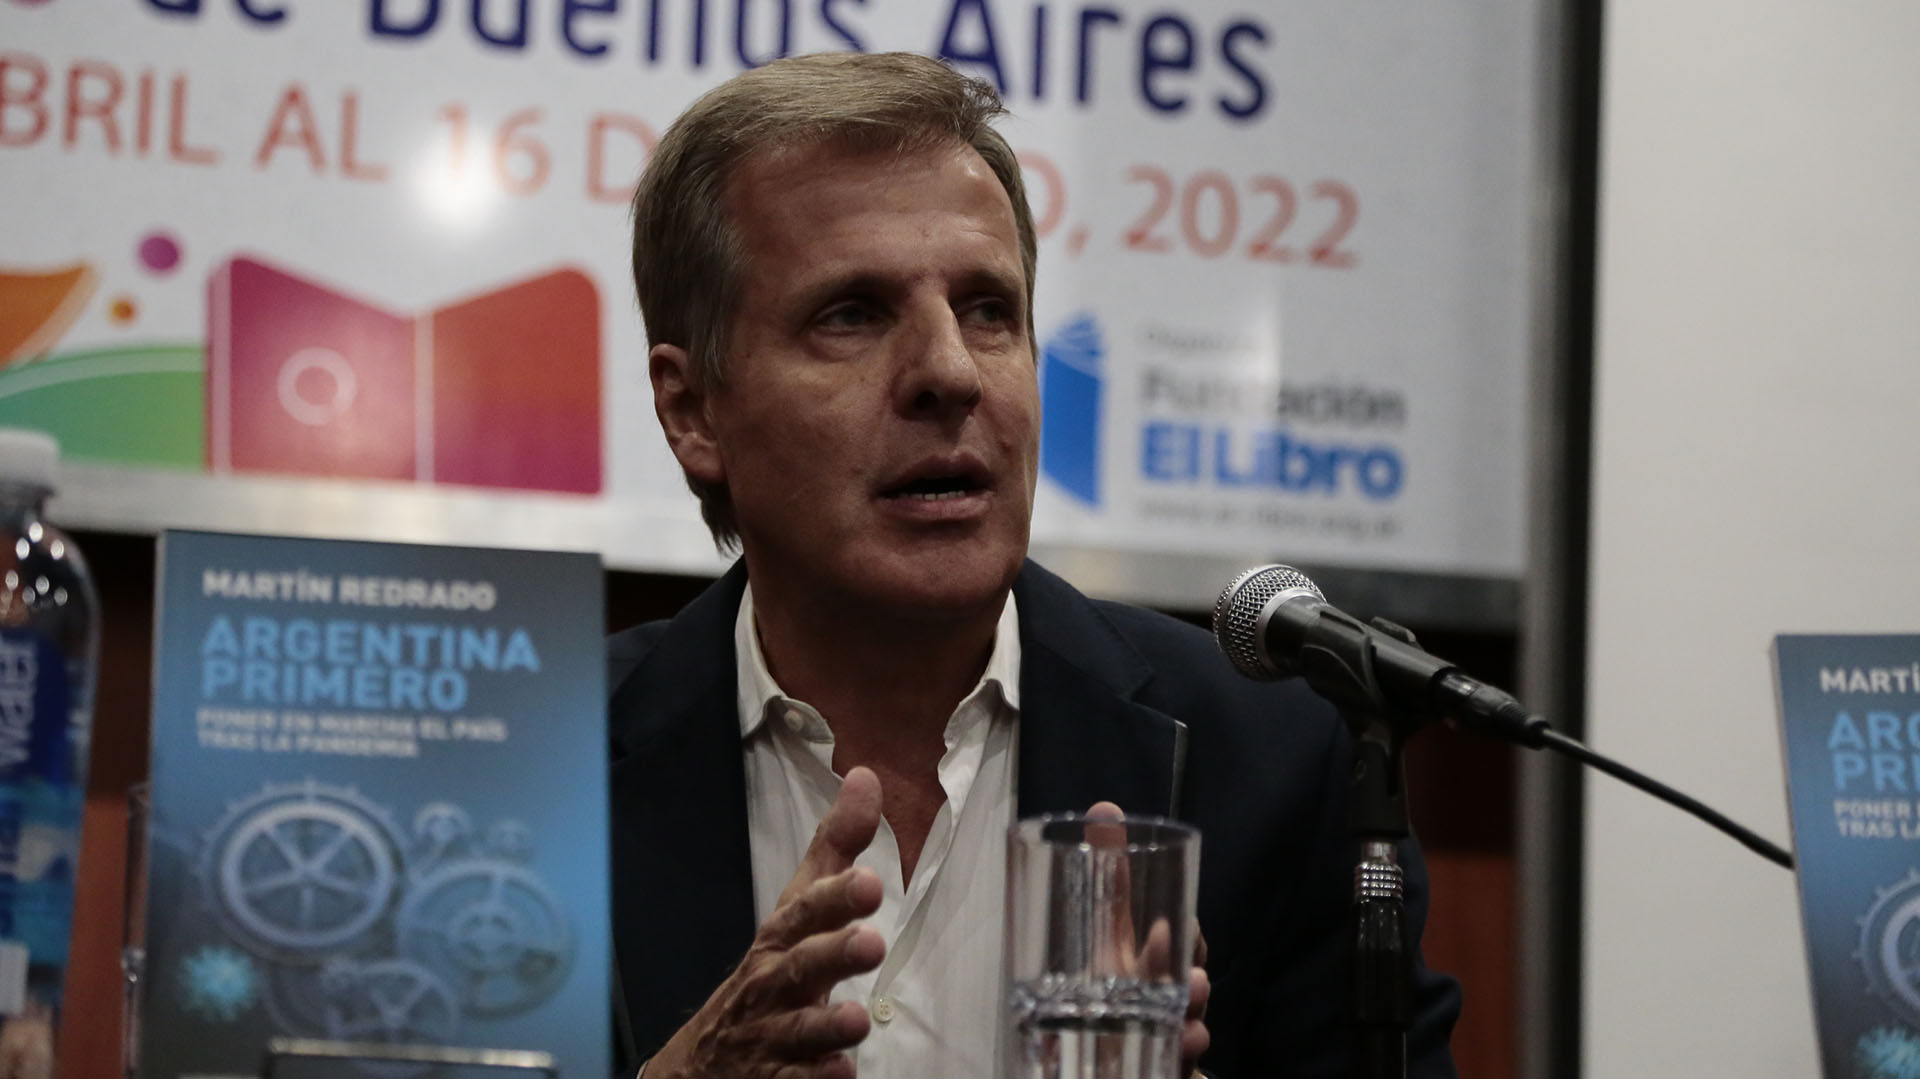 Martín Redrado presentó su libro junto a Facundo Manes: “La Argentina ha empeorado desde 2020, no hemos solucionado ninguno de los problemas que teníamos”